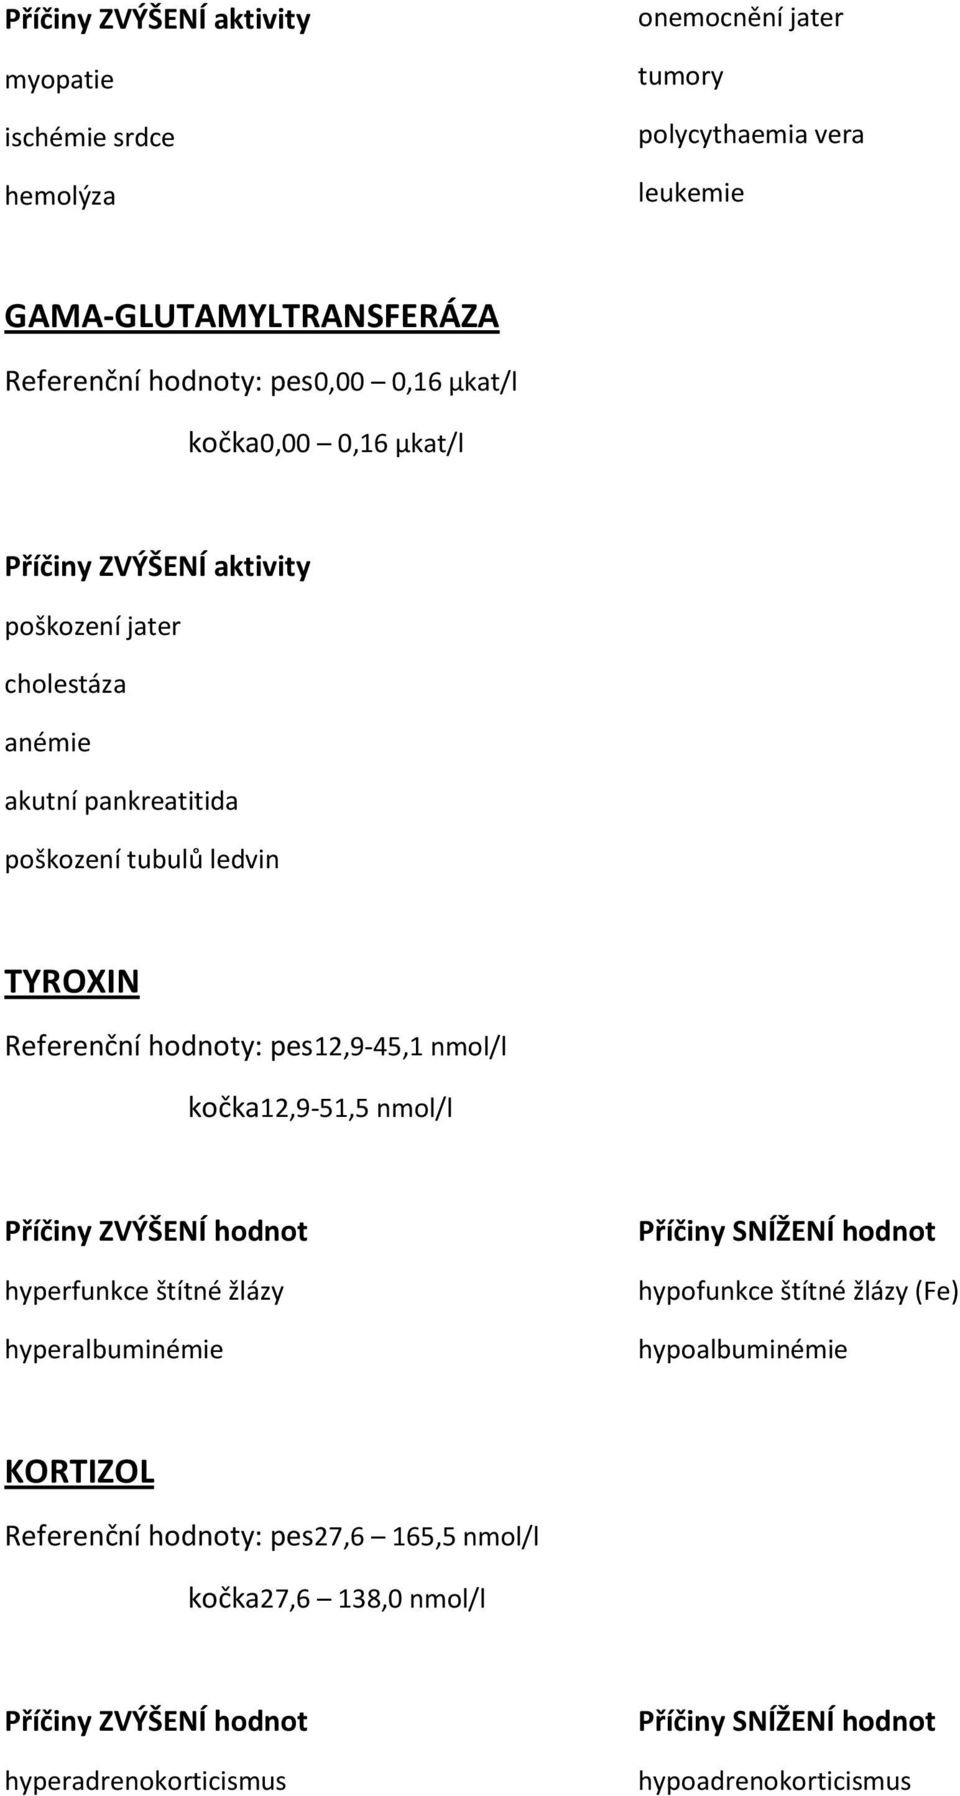 Referenční hodnoty: pes12,9-45,1 nmol/l kočka12,9-51,5 nmol/l hyperfunkce štítné žlázy hyperalbuminémie Příčiny SNÍŽENÍ hodnot hypofunkce štítné žlázy (Fe)